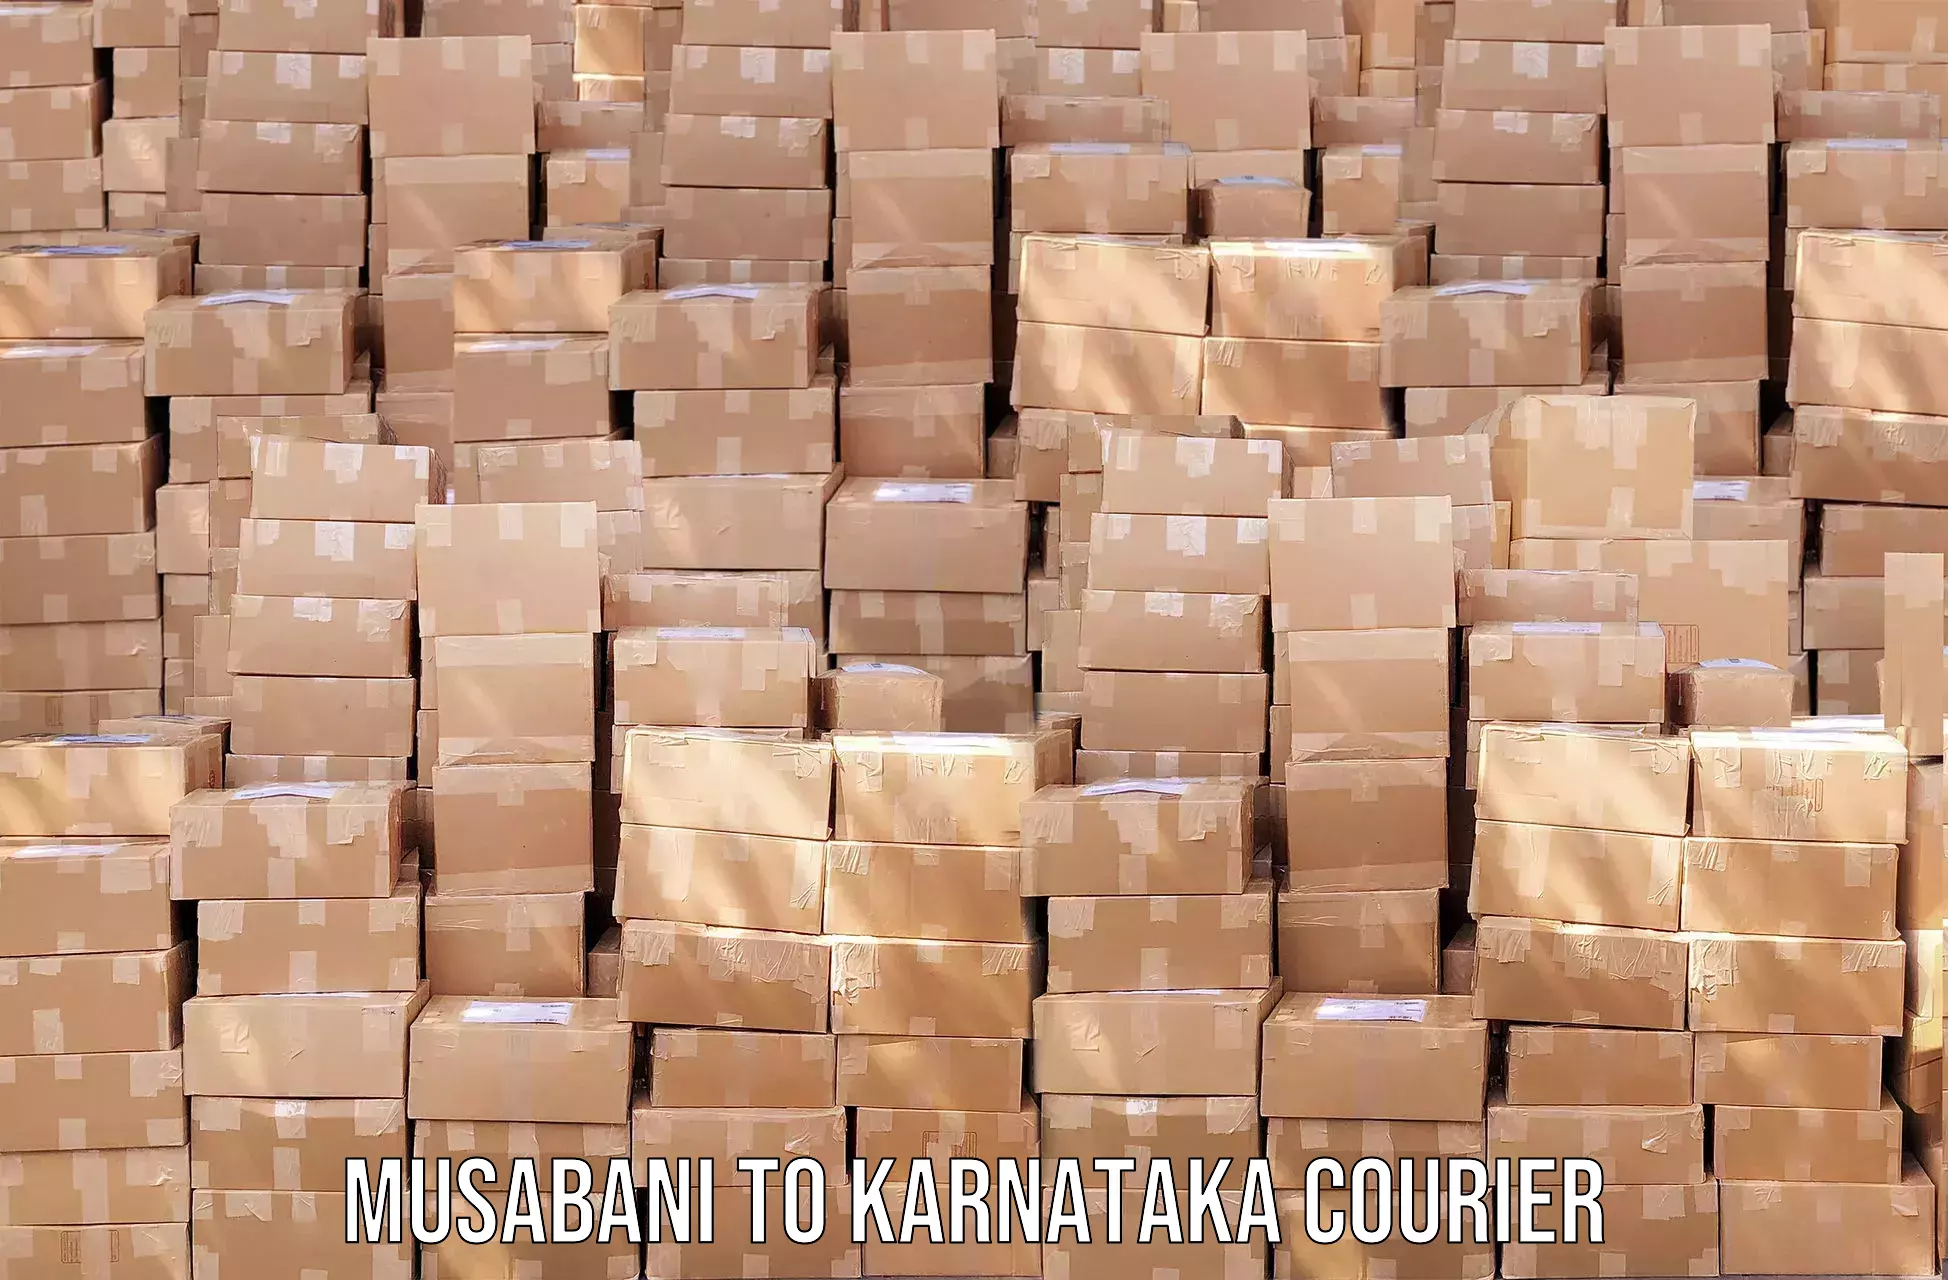 Global shipping solutions Musabani to Ramanathapura